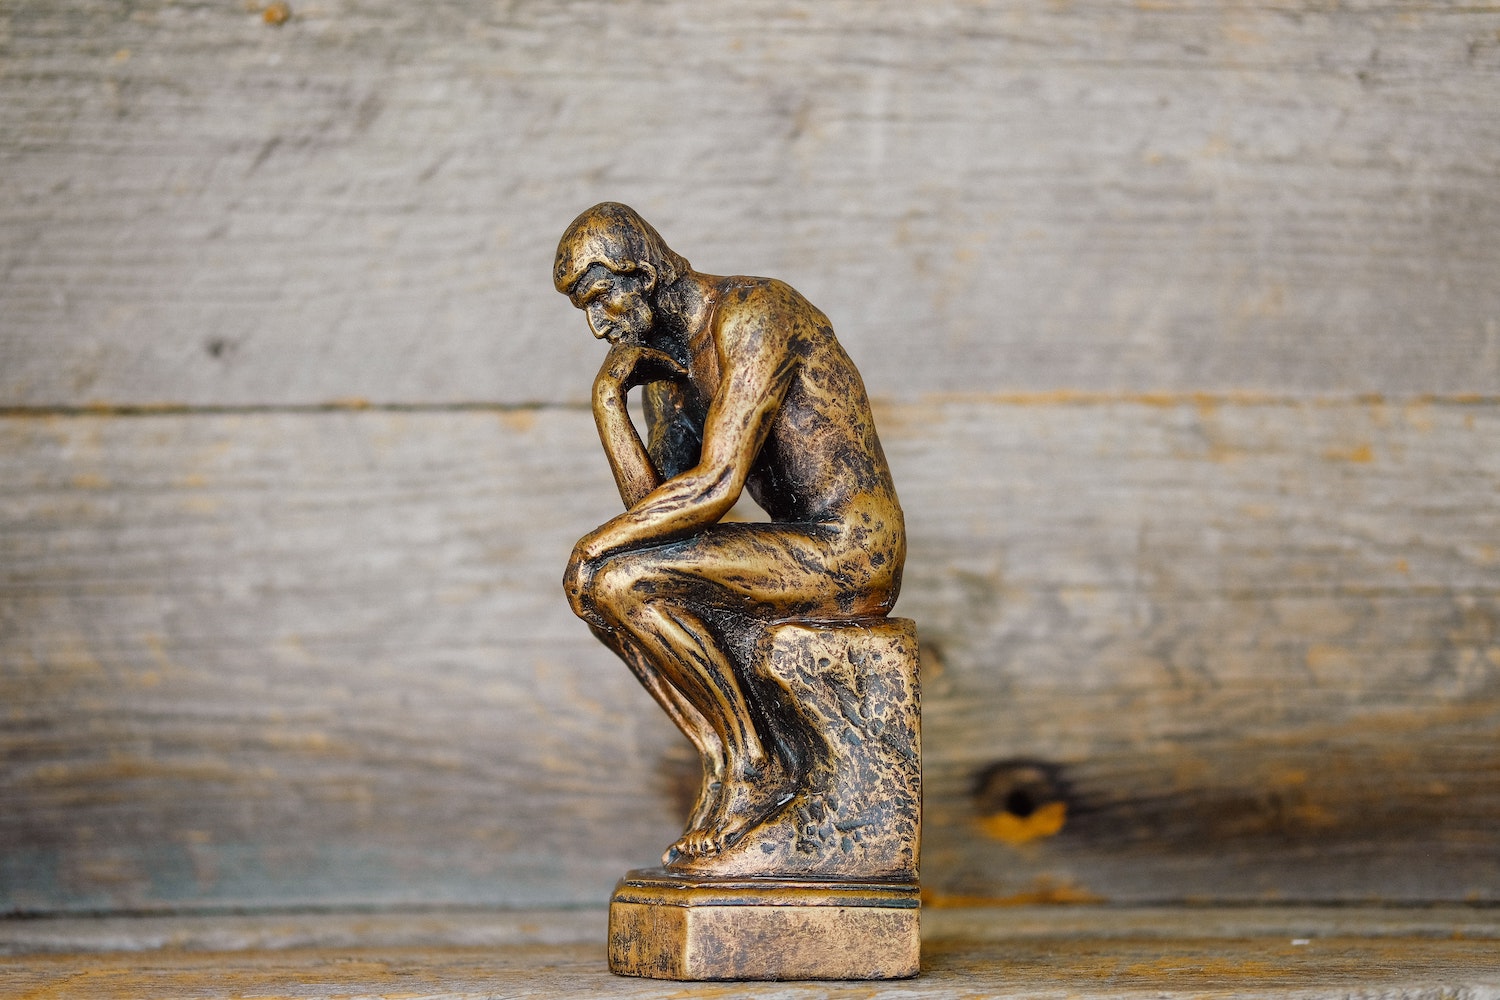 una versión en miniatura de Rodin "El pensador" escultura